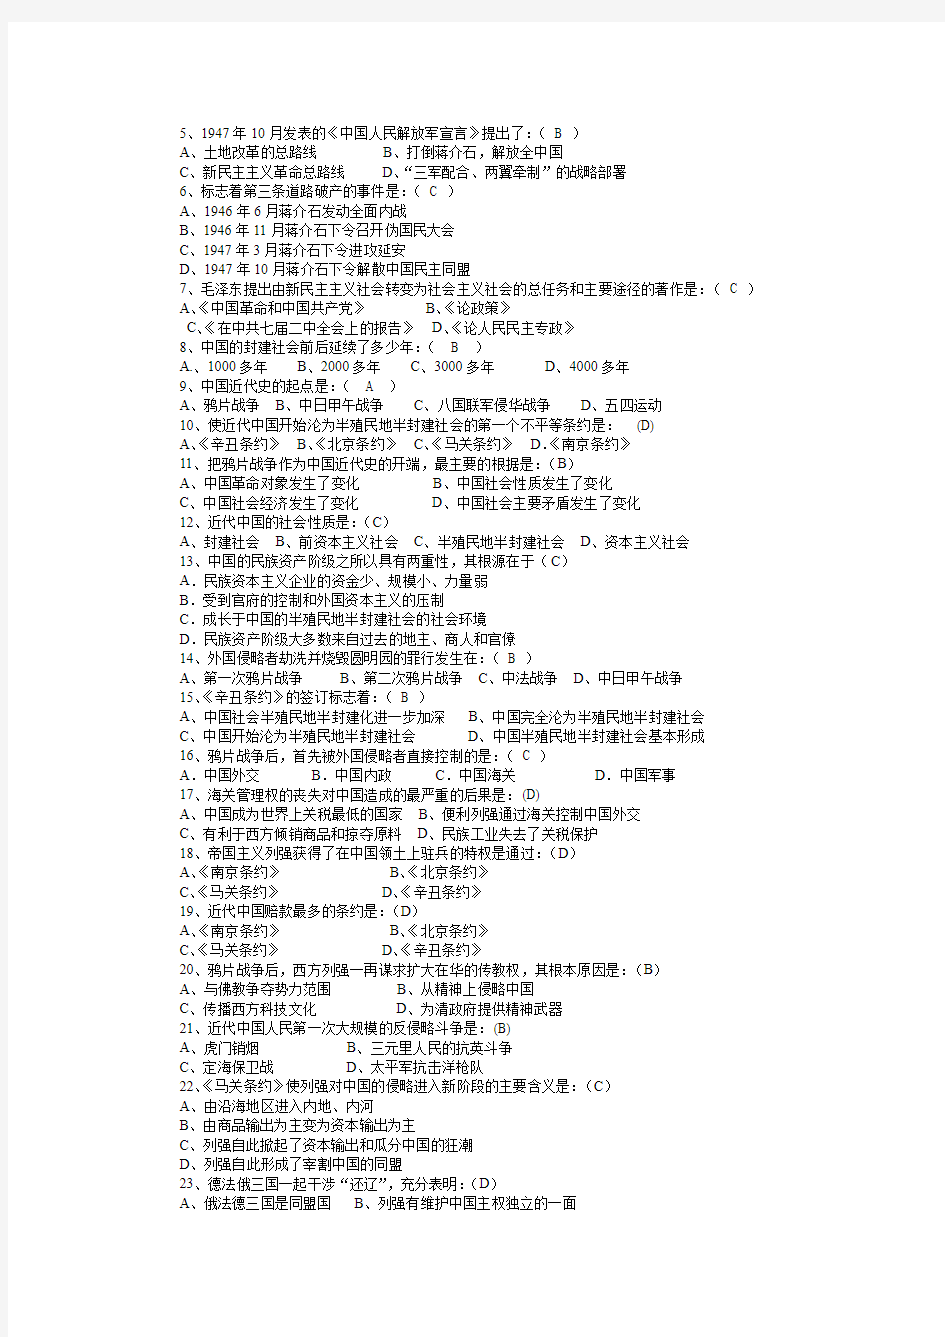 《中国近现代史》选择题全集(共含250道题目和答案)